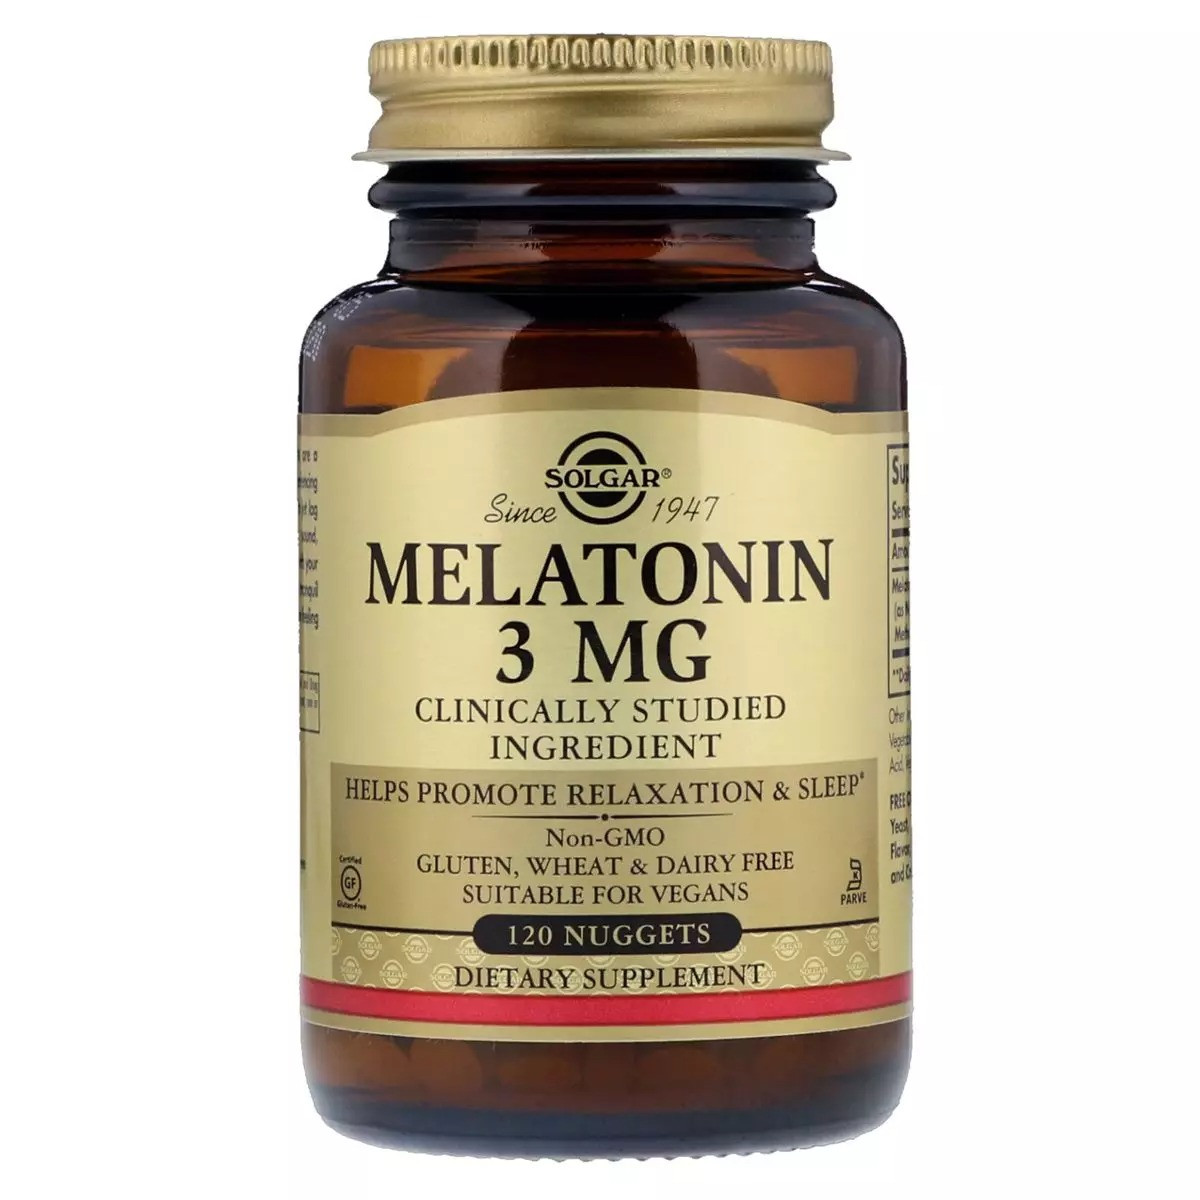 Мелатонін 3 мг для гарного сну, Solgar США, 120 нагетсів скло